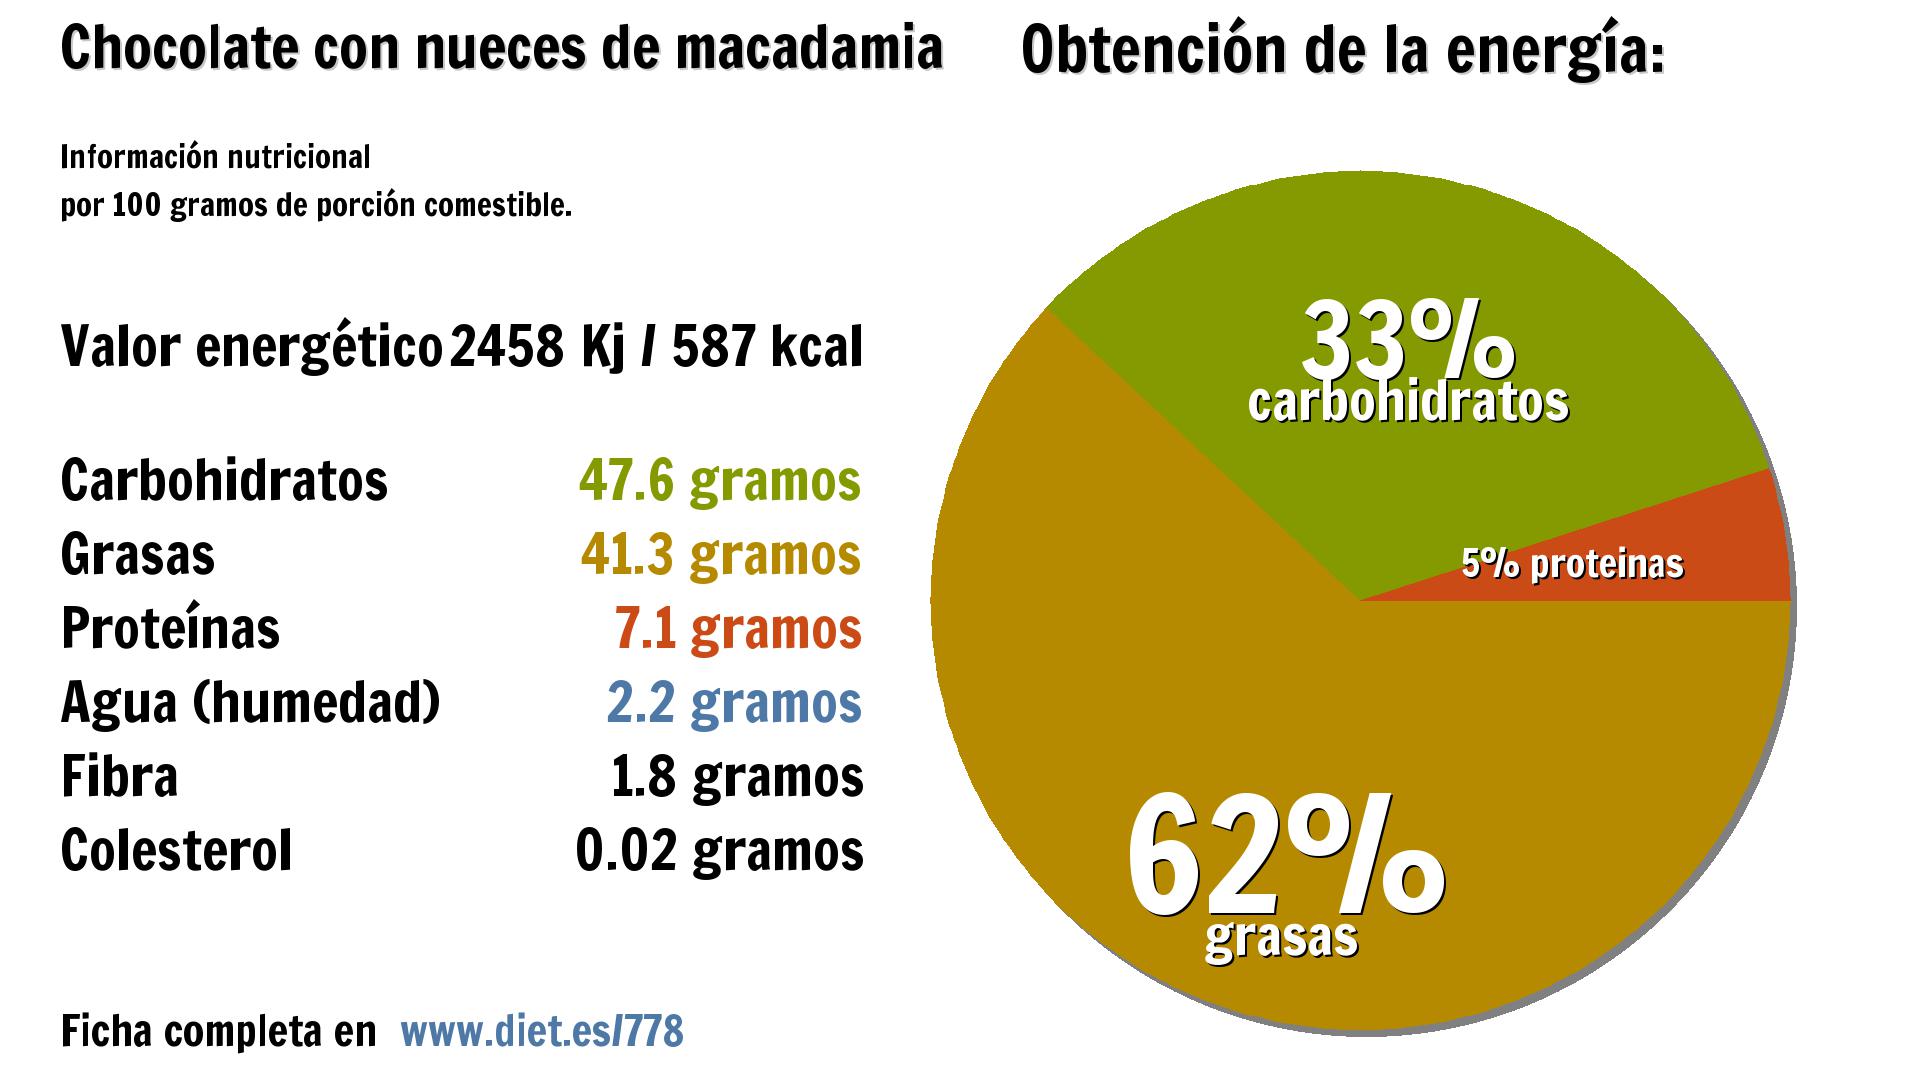 Chocolate con nueces de macadamia: energía 2458 Kj, carbohidratos 48 g., grasas 41 g., proteínas 7 g., agua 2 g. y fibra 2 g.